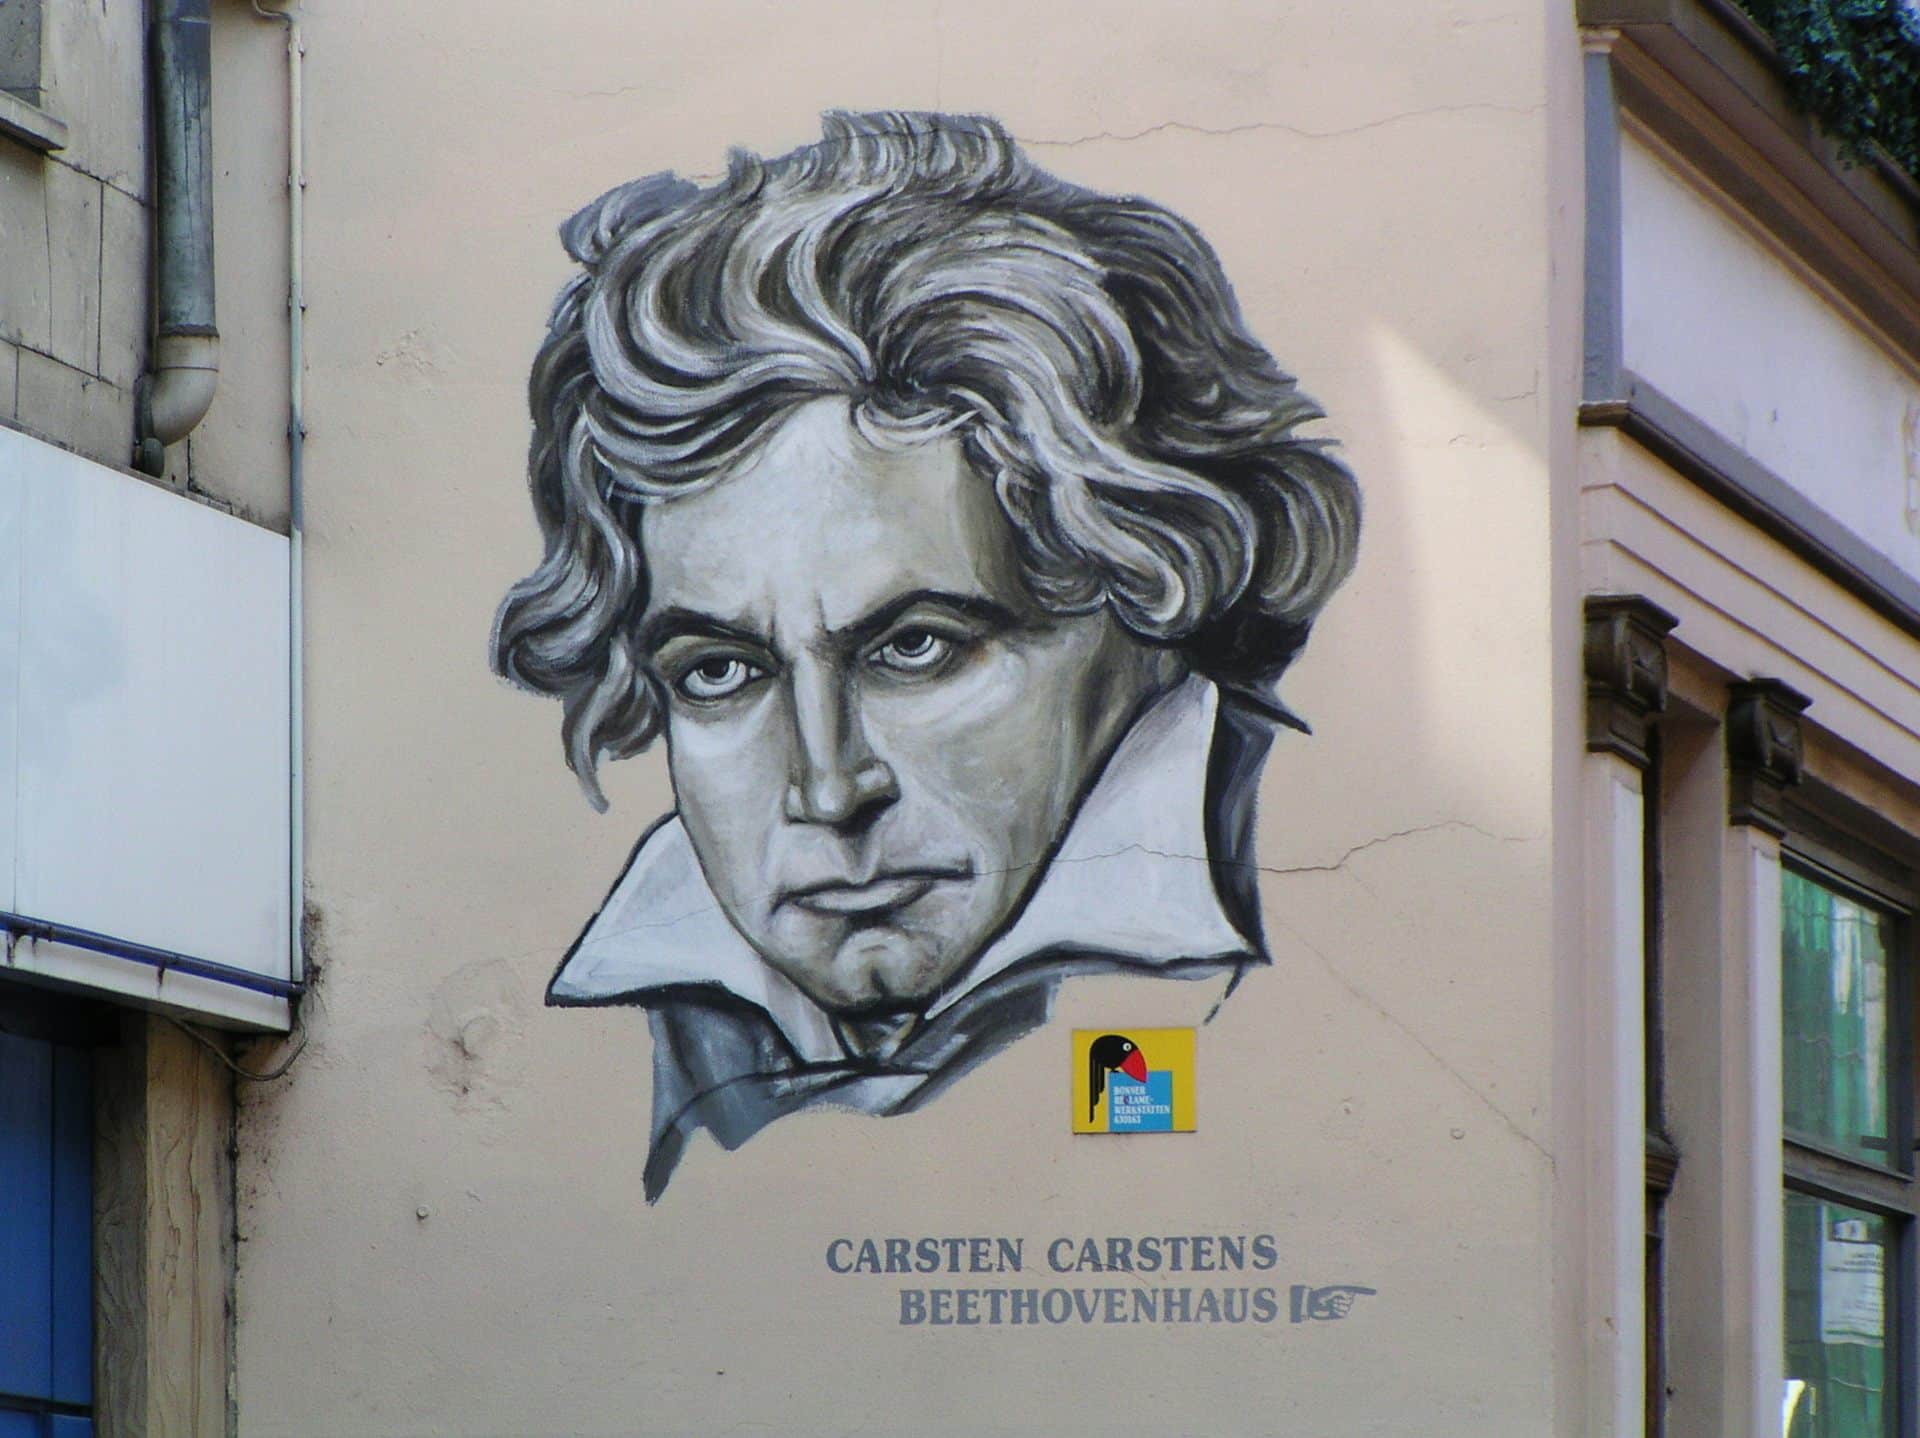 La Novena sinfonía de Beethoven cumple dos siglos: ¿por qué es tan extraordinaria?